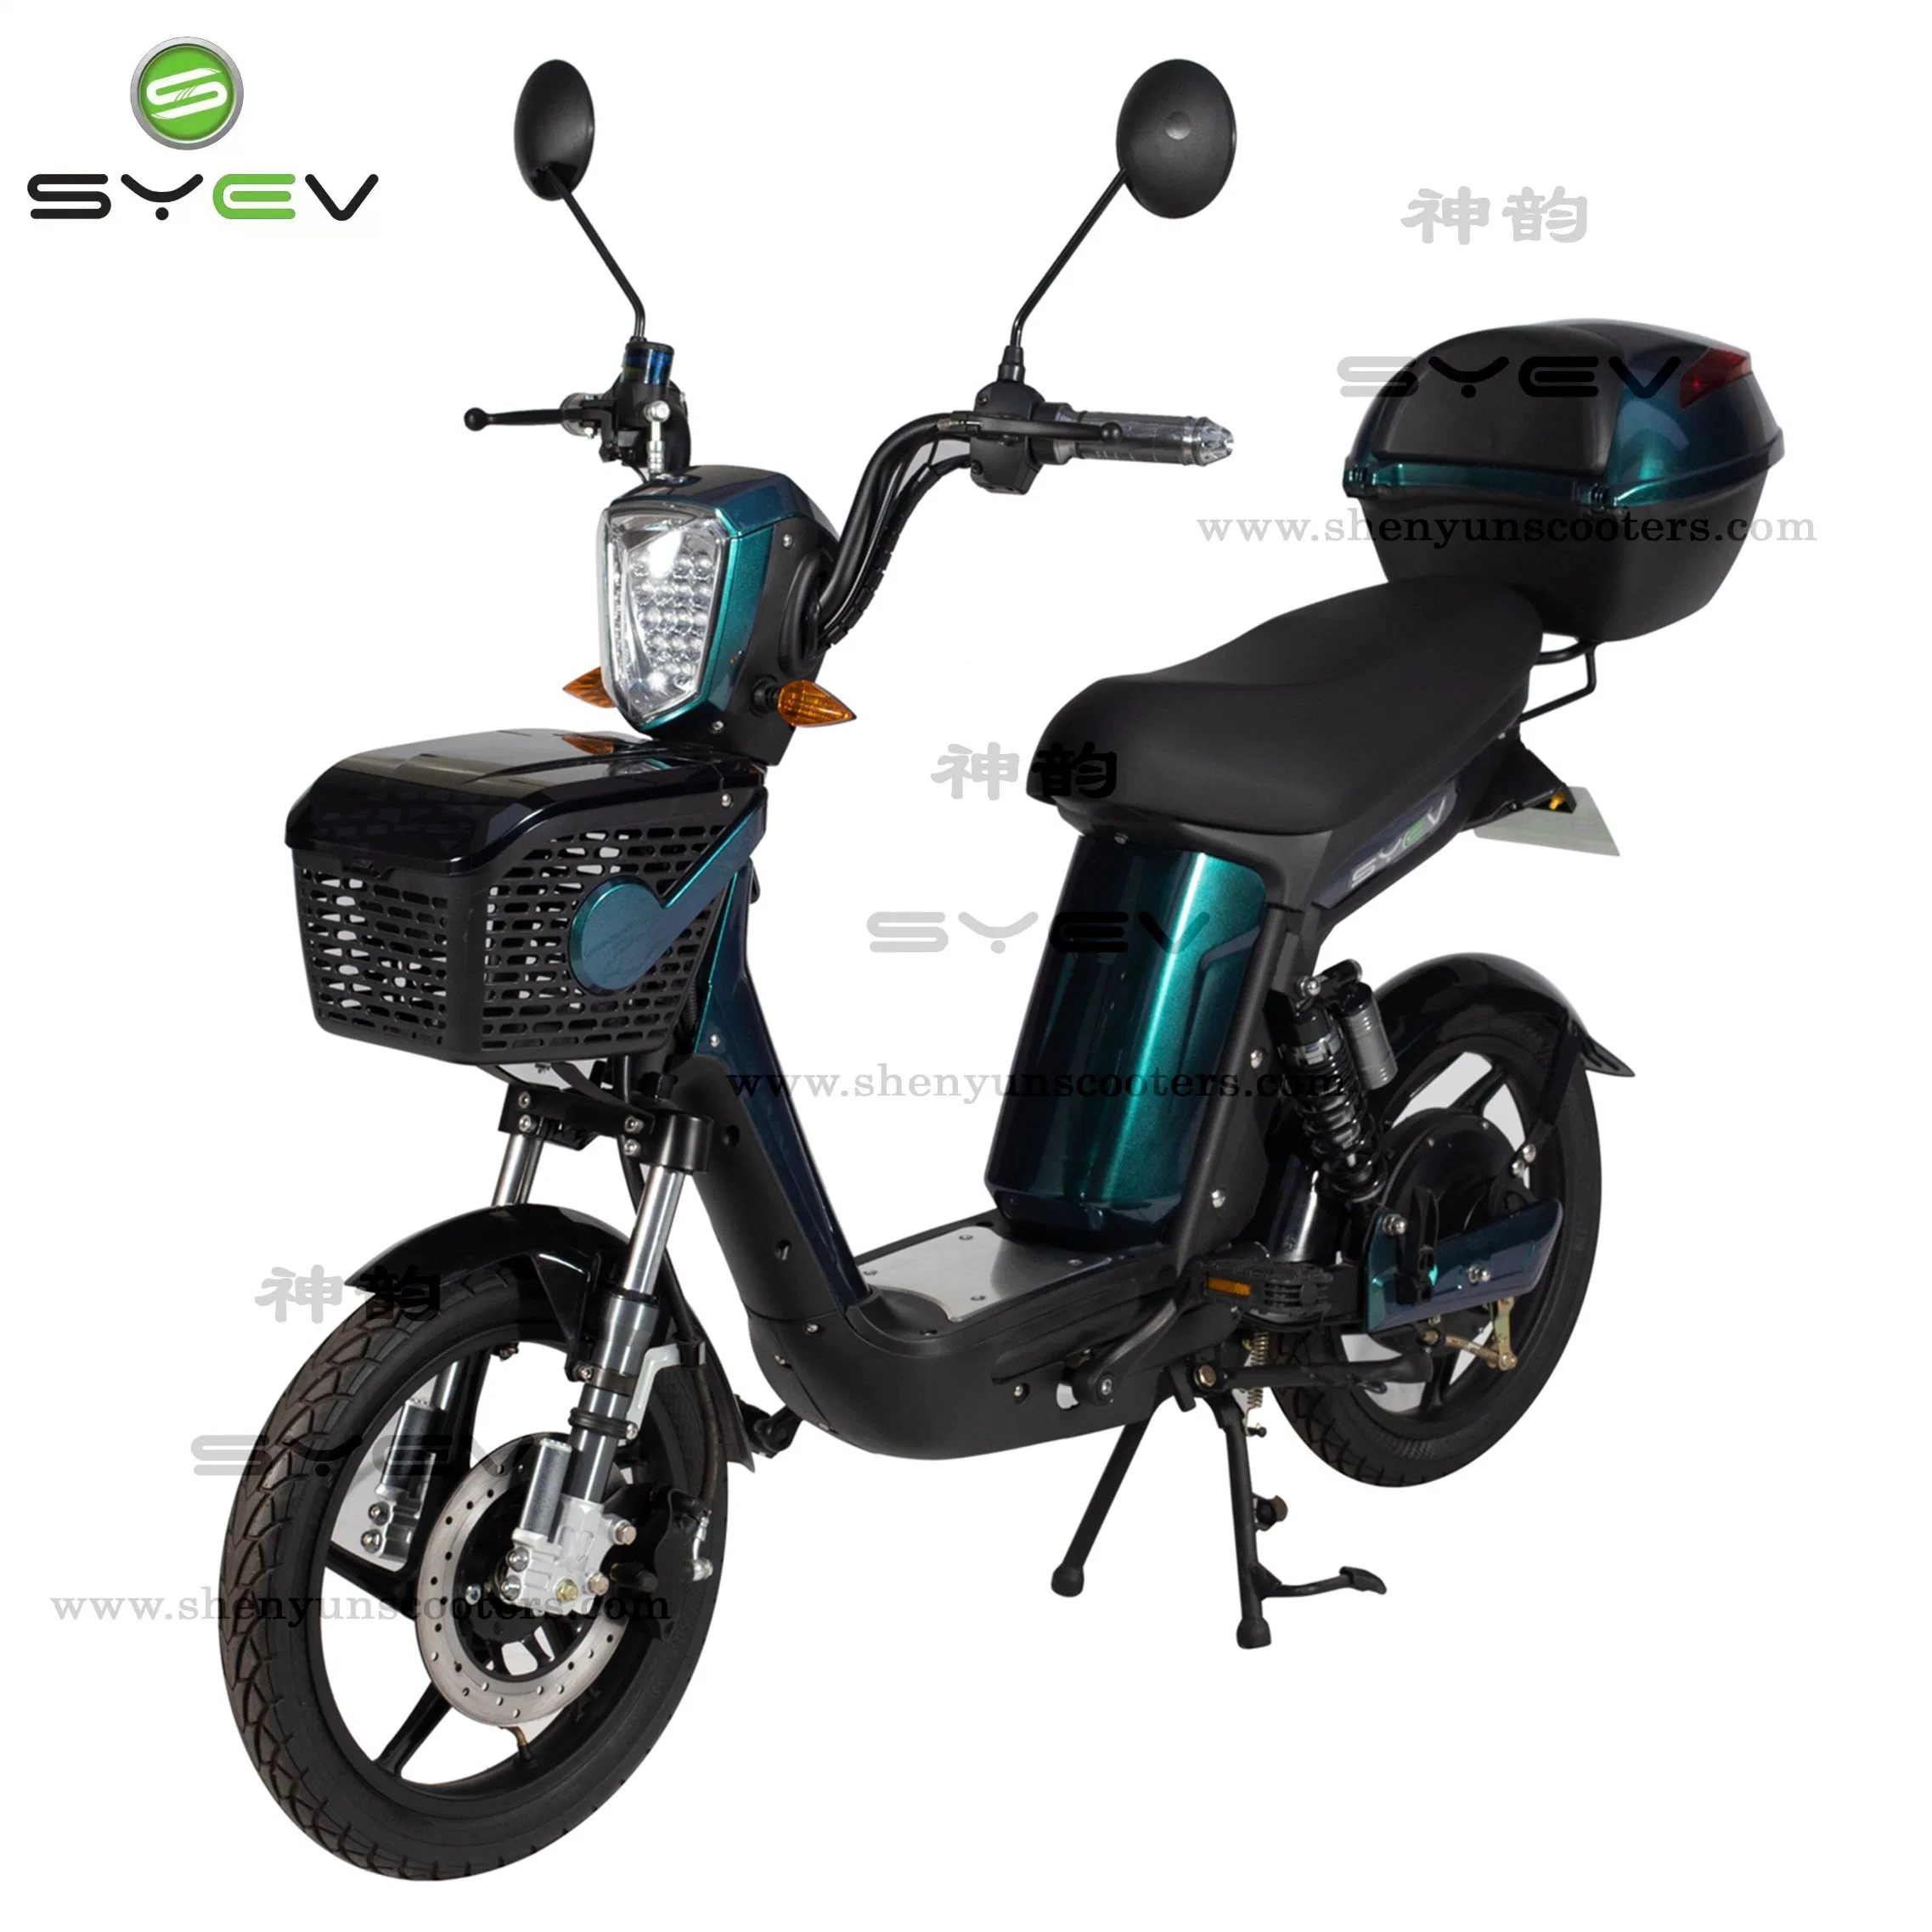 Meilleure sécurité Syev 500W adulte vélo électrique avec certificat ce cher vélo électrique 30-40 km de portée Scooter 35km/h